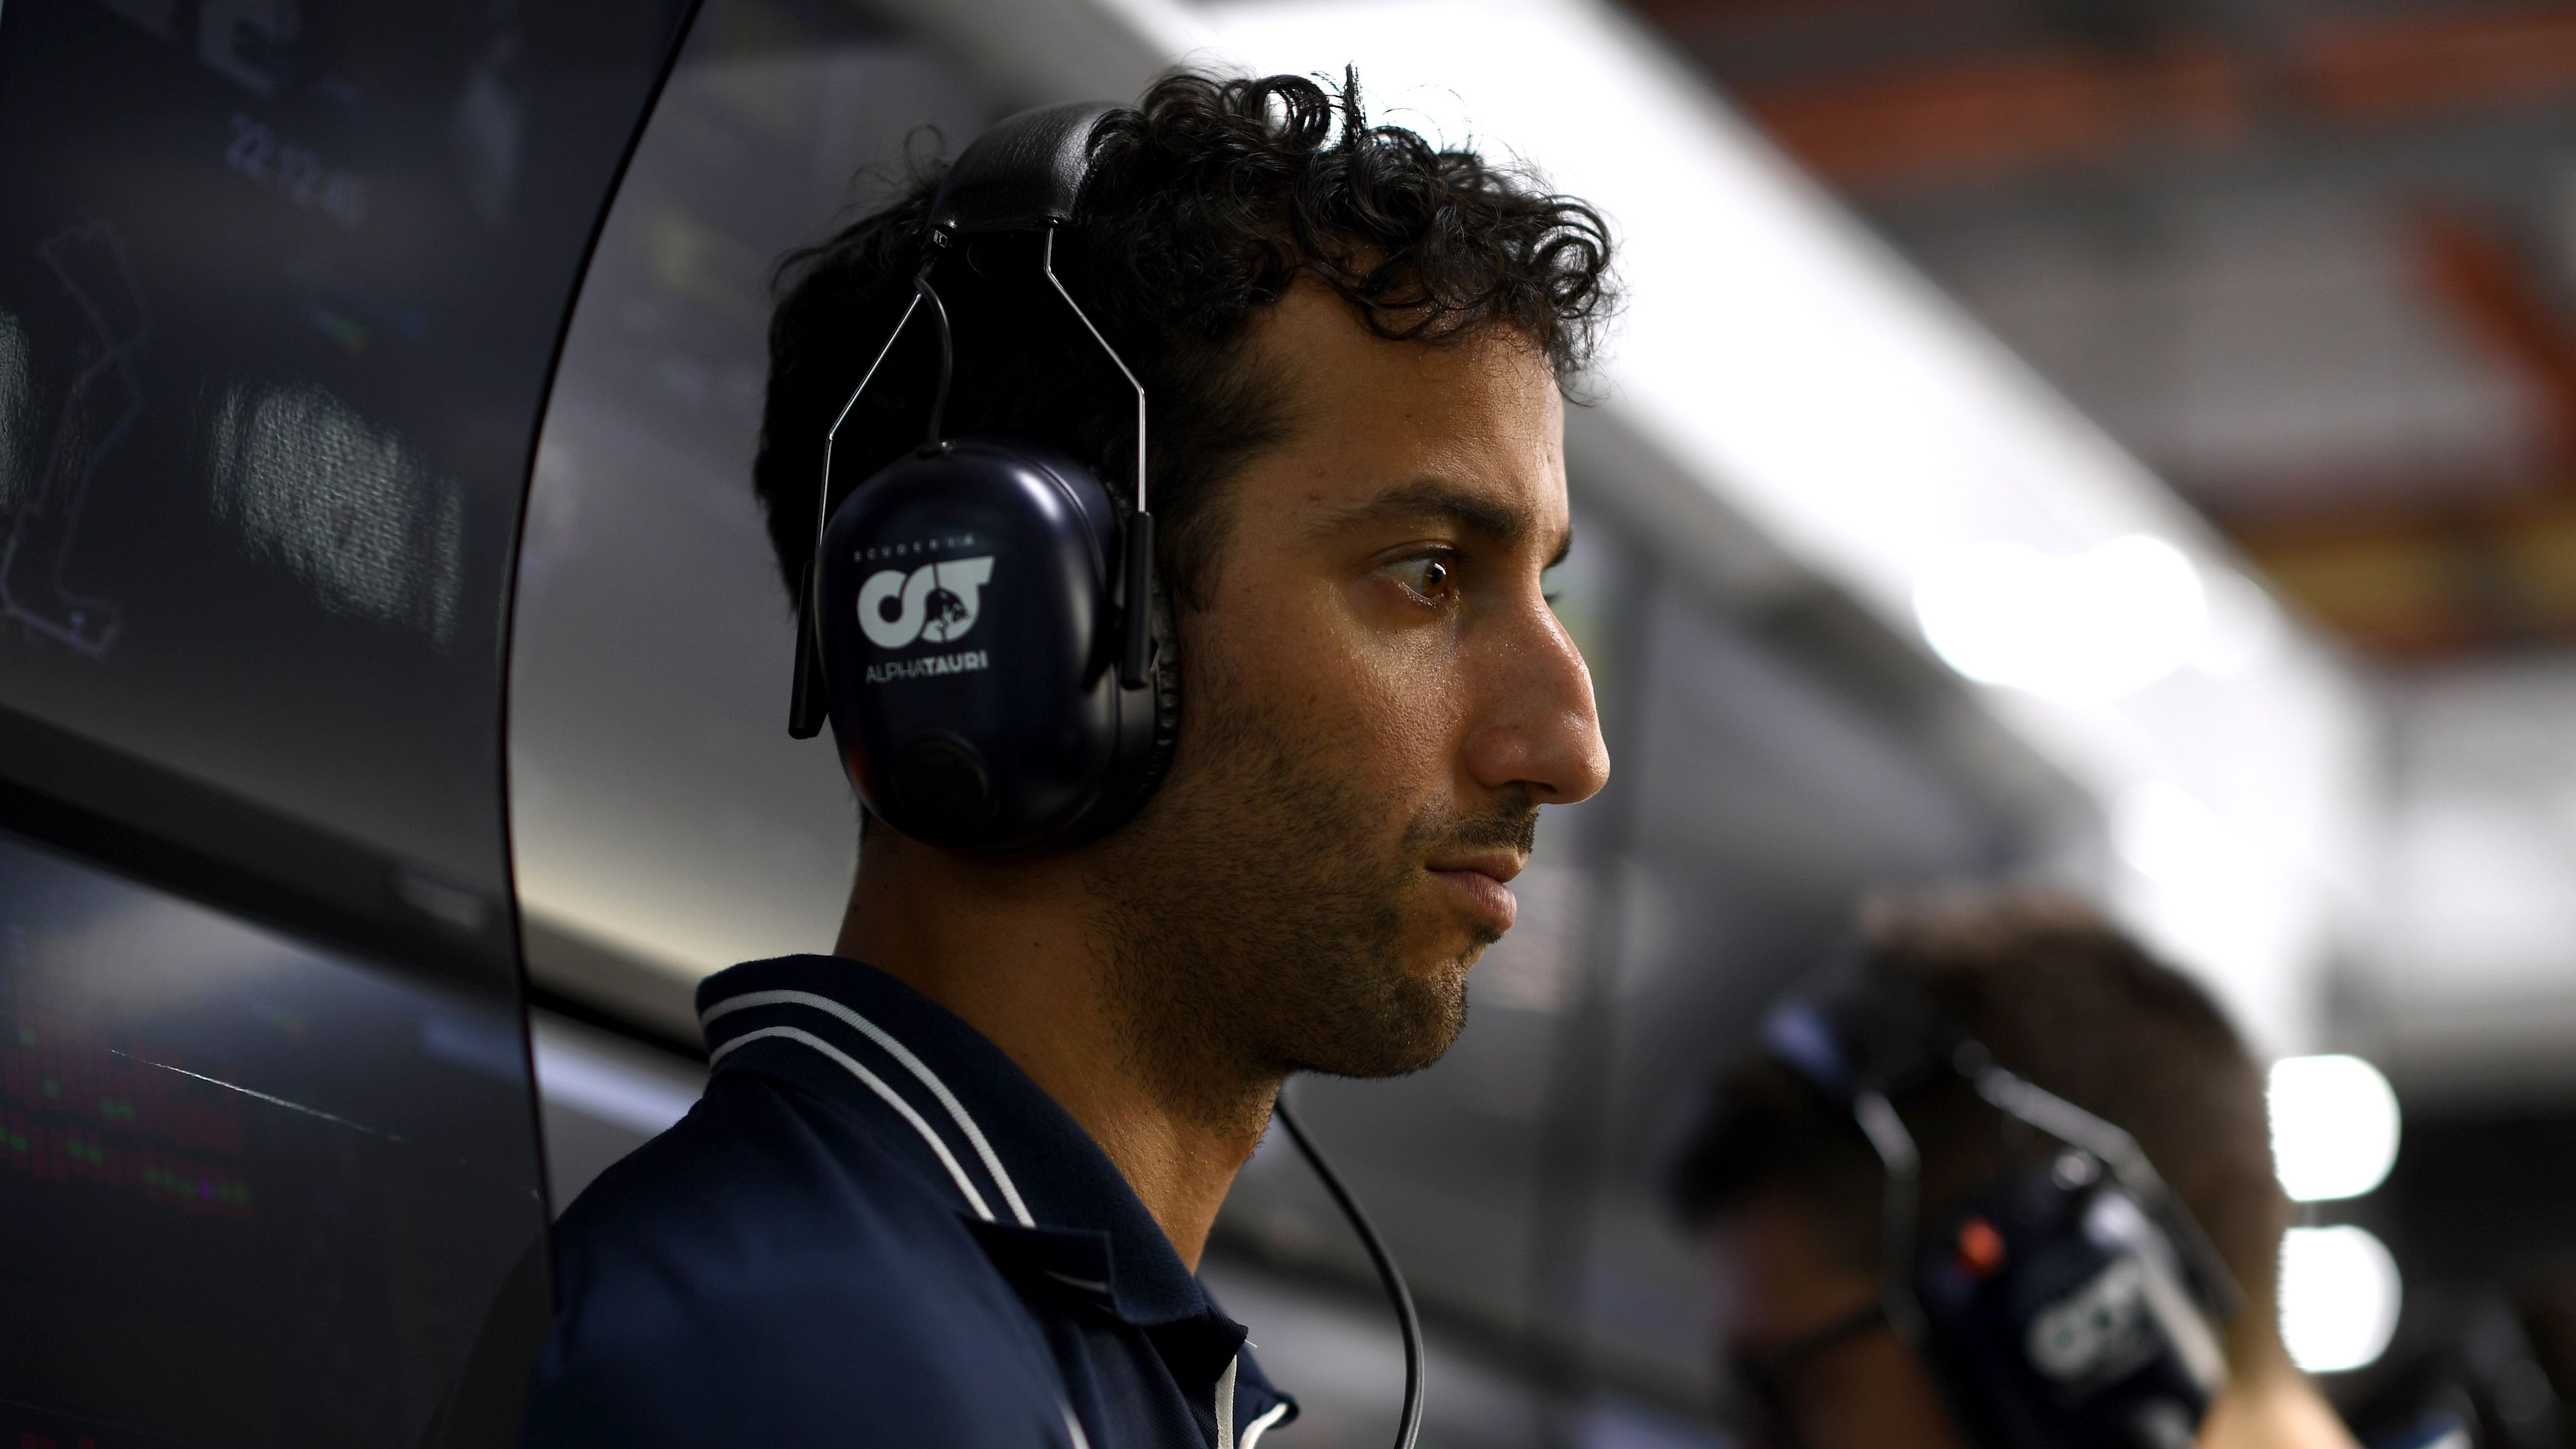 Eldőlt Ricciardo sorsa a Forma–1-ben – hivatalos